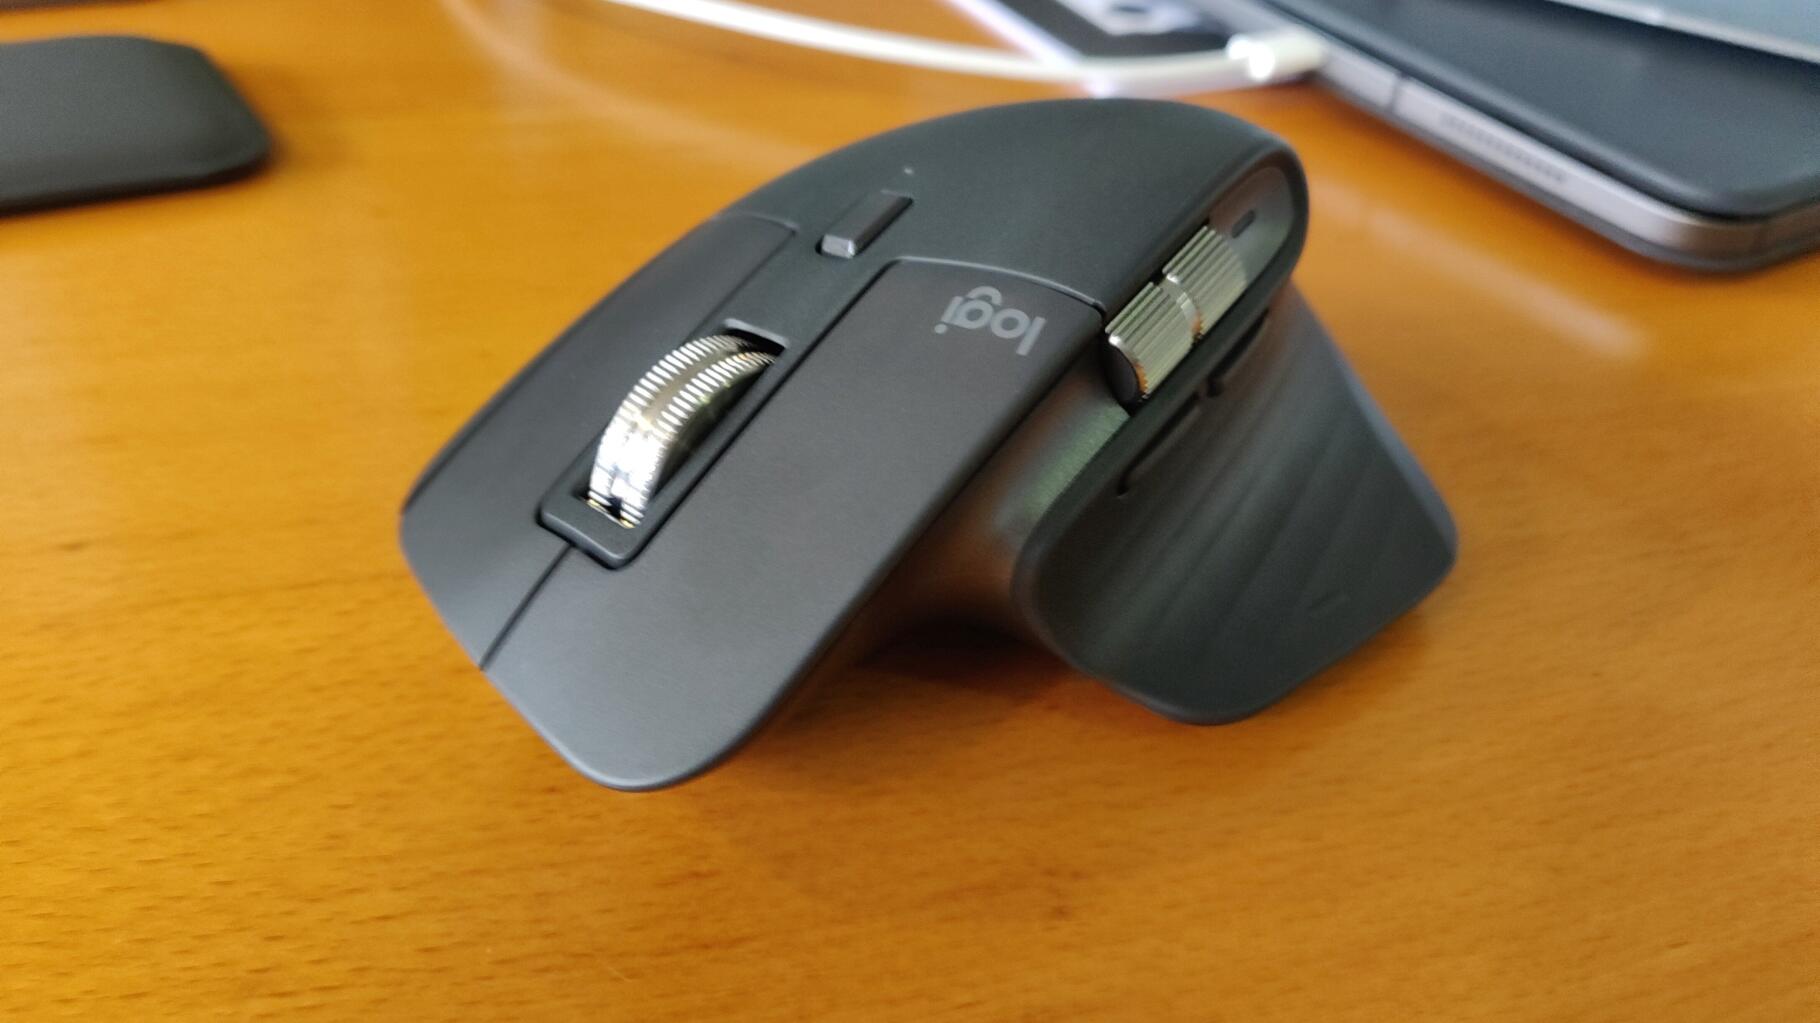 Logitech MX Master 3, une souris pour PC à la molette magnétique